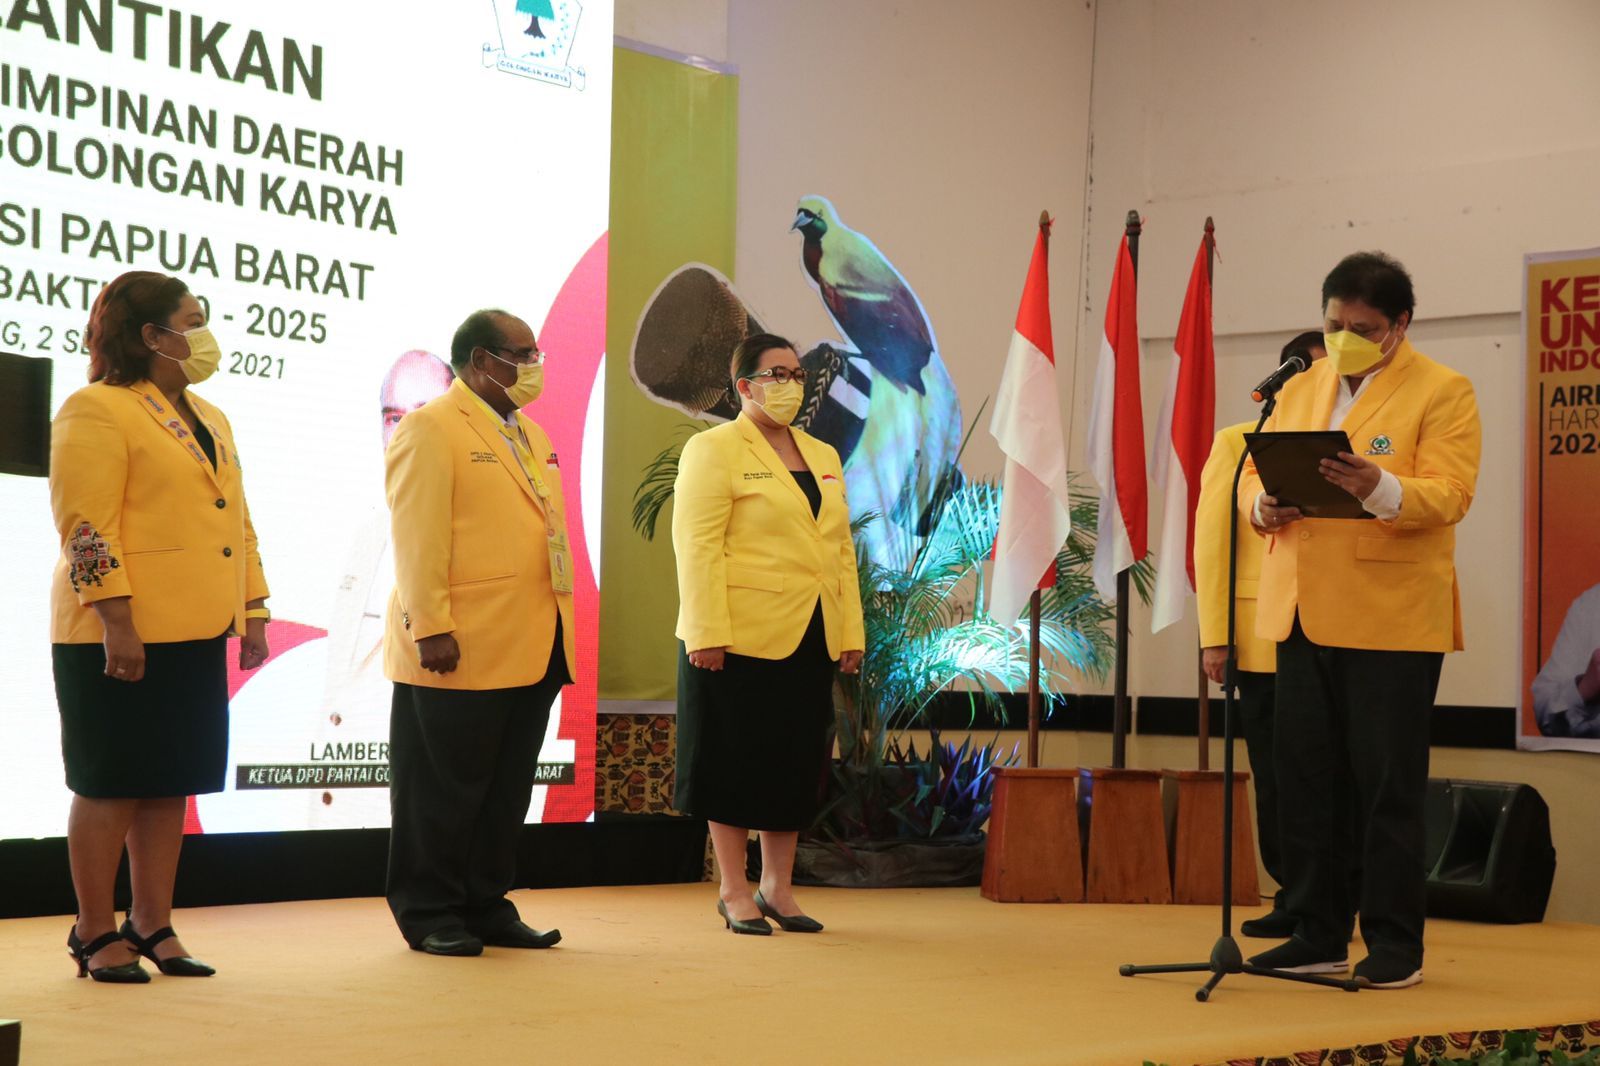 Ketua Umum DPP Partai Golkar Airlangga Hartarto, resmi melantik pengurus DPD Partai Golkar Papua Barat periode 2020-2025, di Vega Hotel Sorong, kamis 2 September 2021.